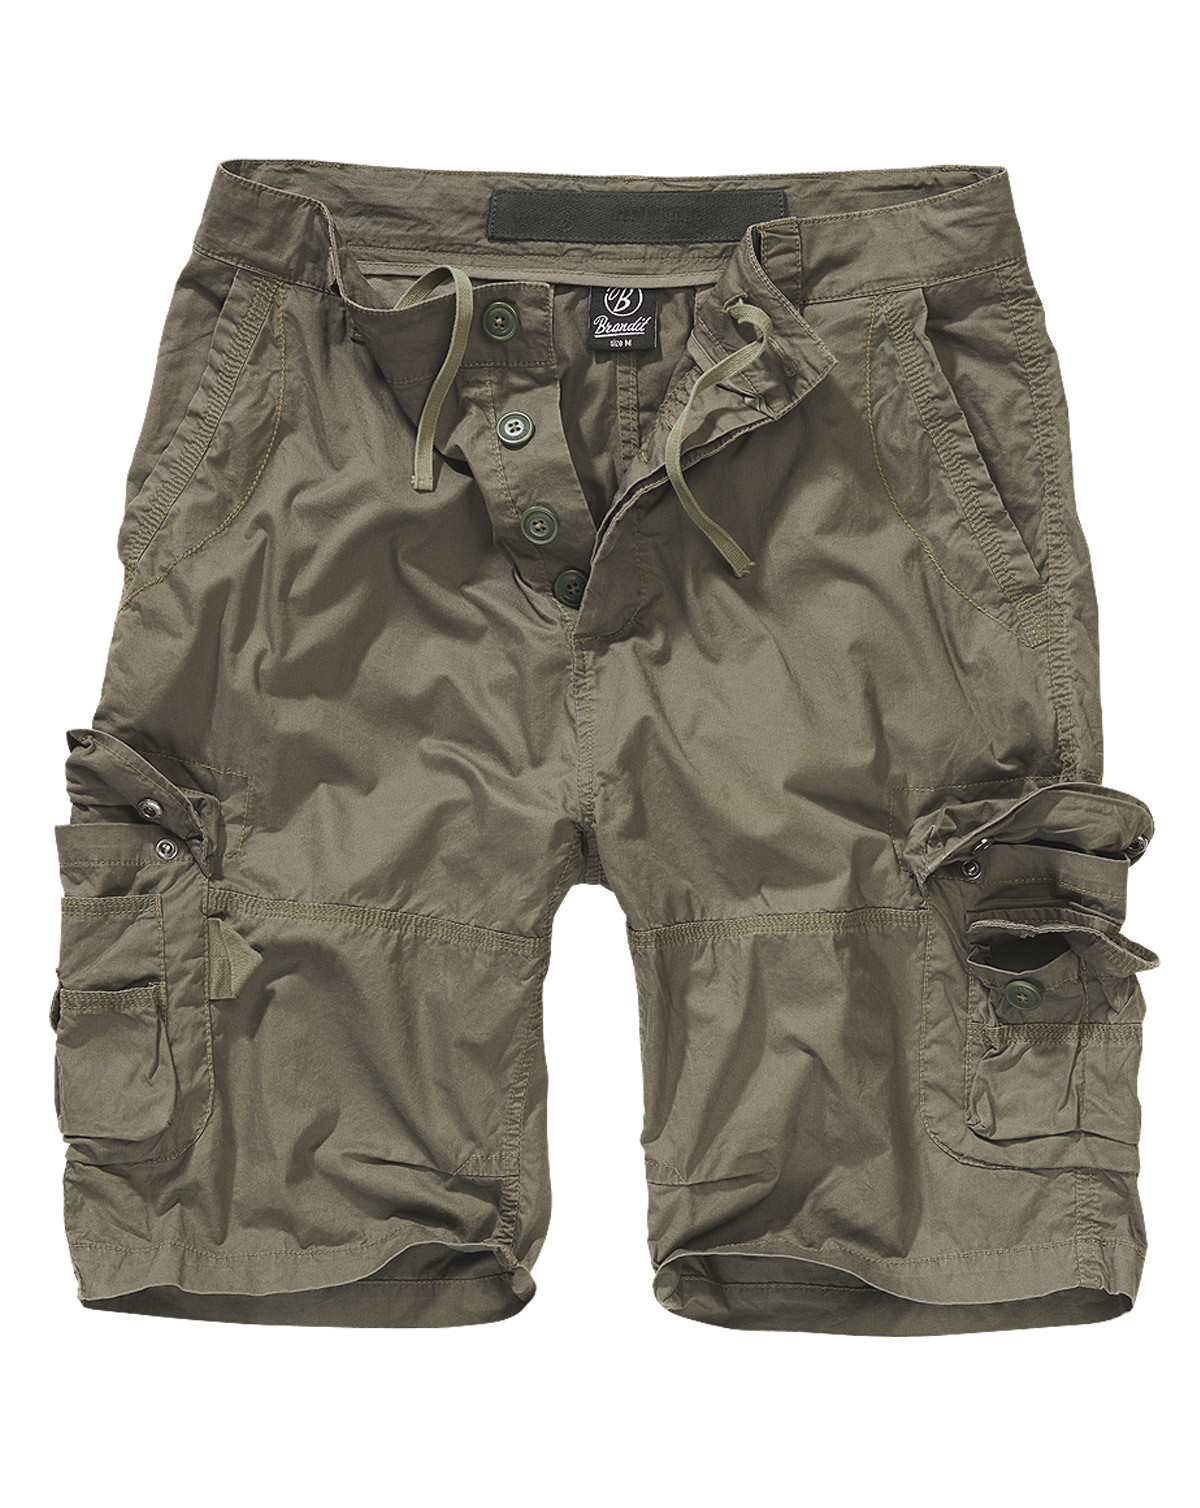 5: Brandit Ty Shorts (Oliven, S)